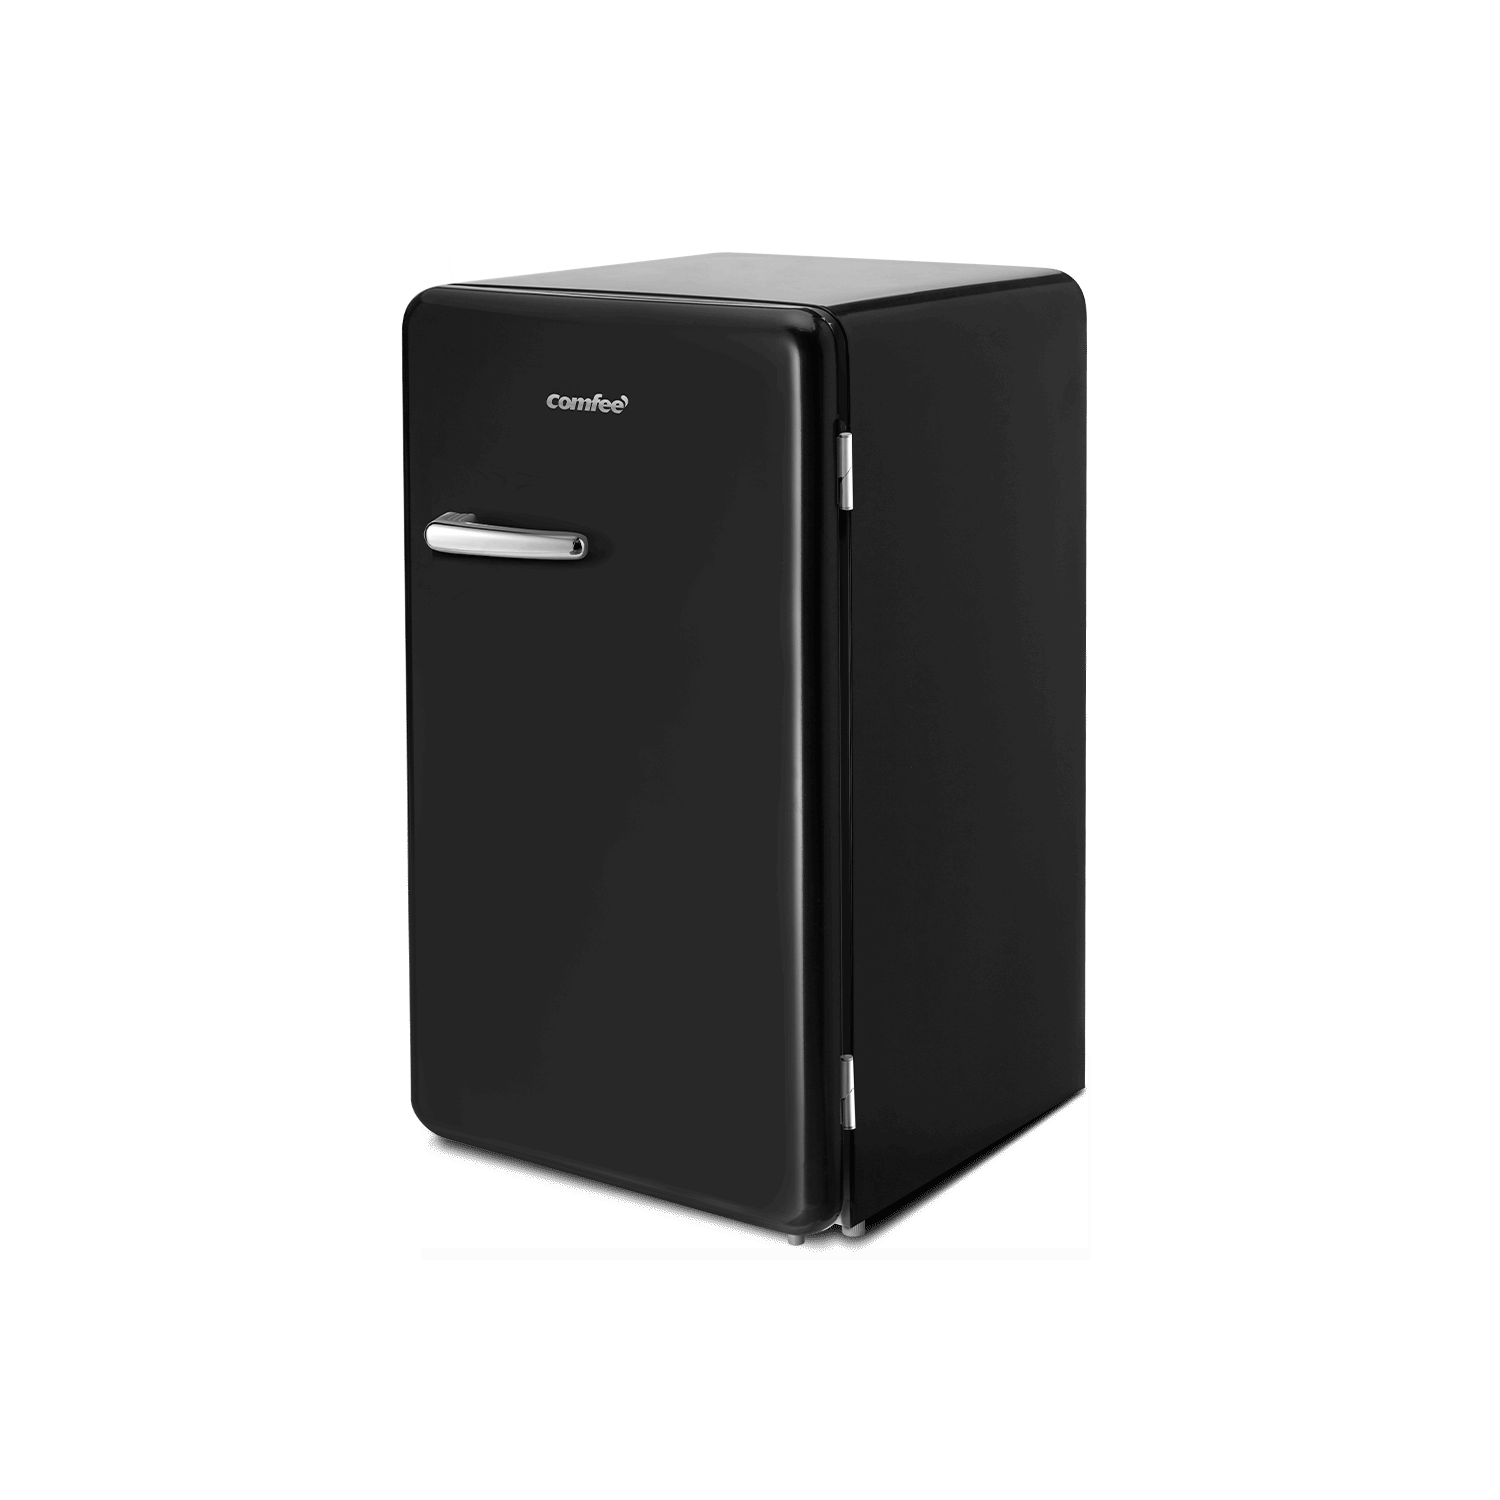  COMFEE' CRM33S3ABB - Mini refrigerador de 3.3 pies